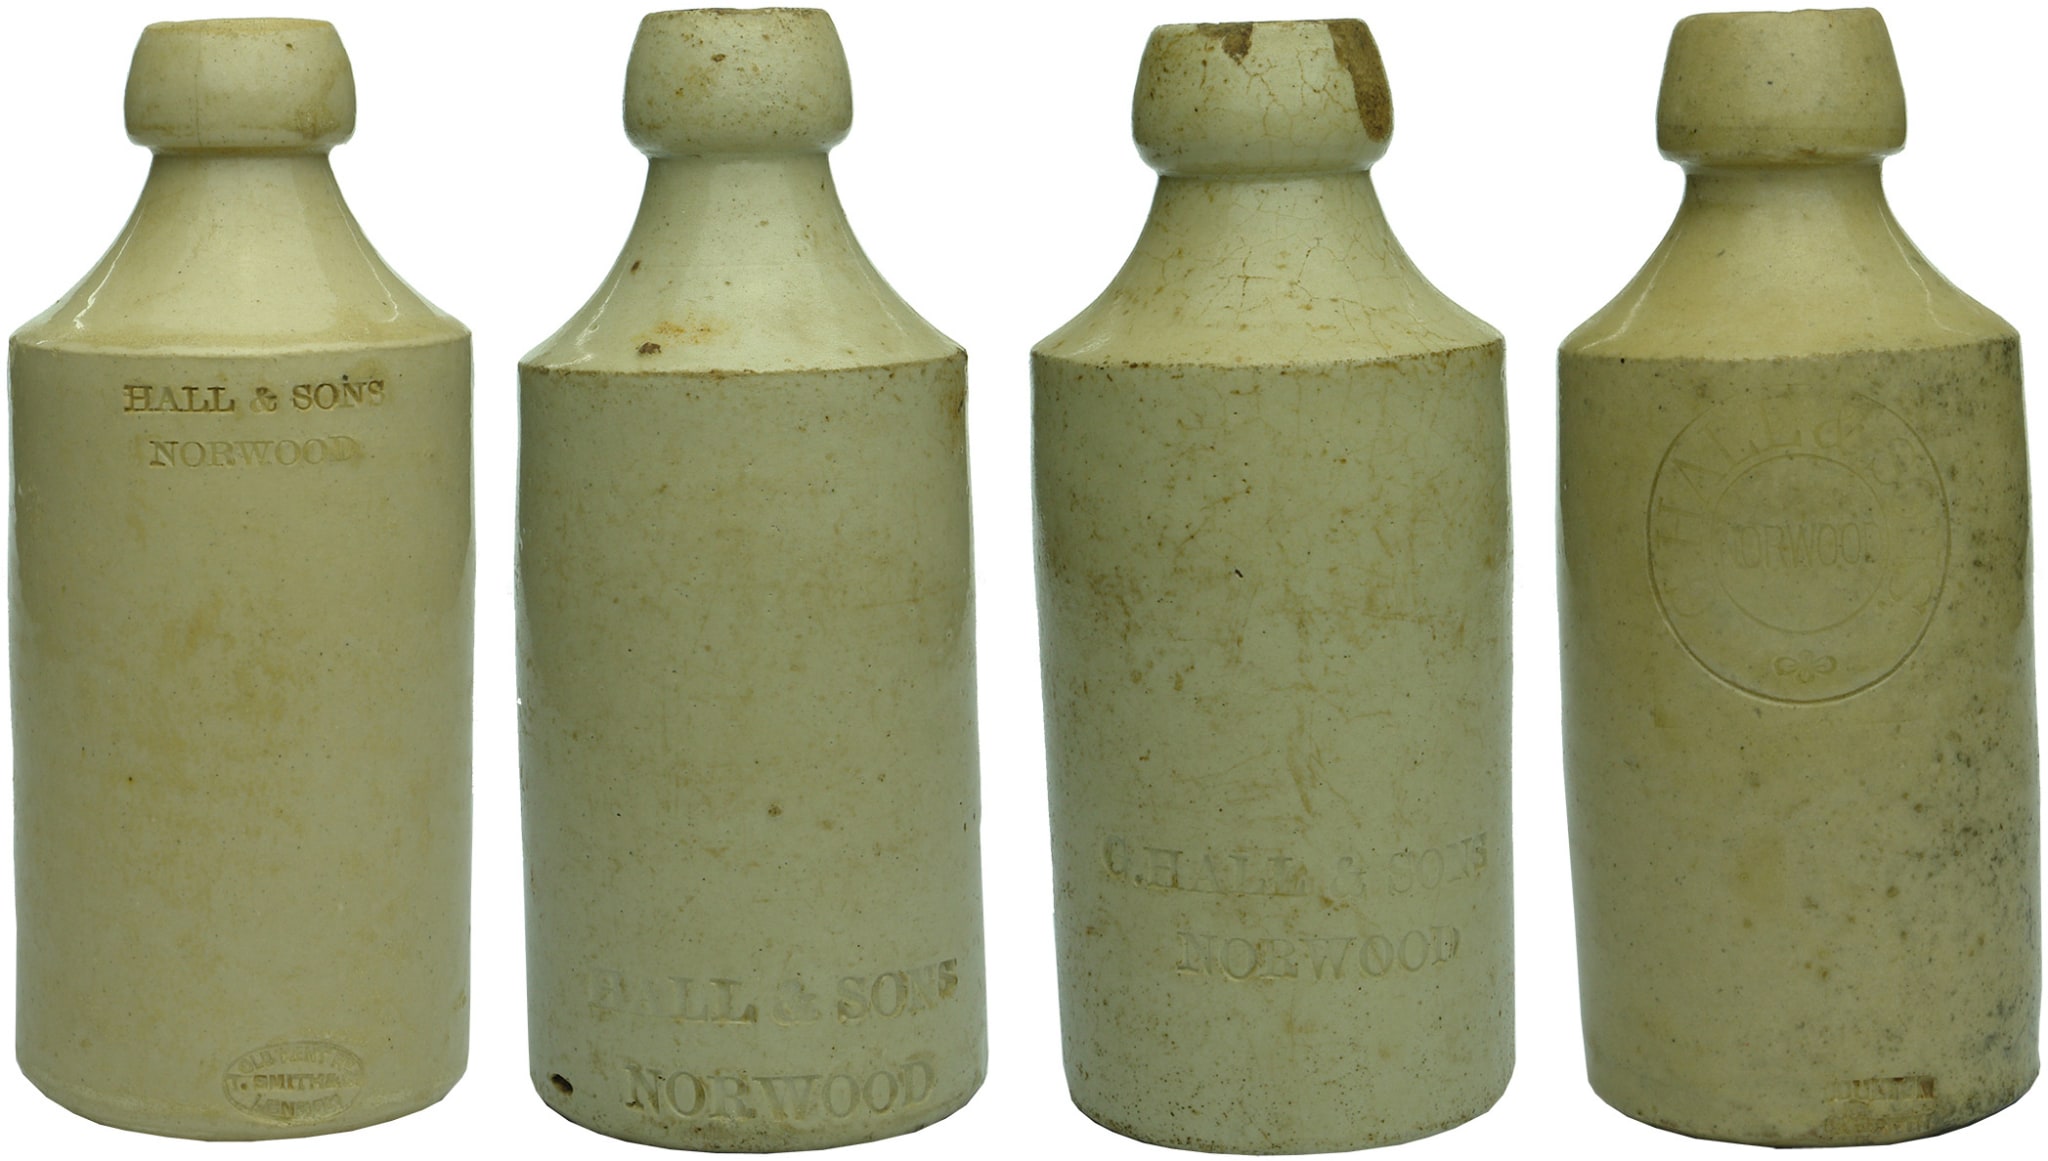 Hall Norwood Impressed Stoneware Ginger Beer Bottles